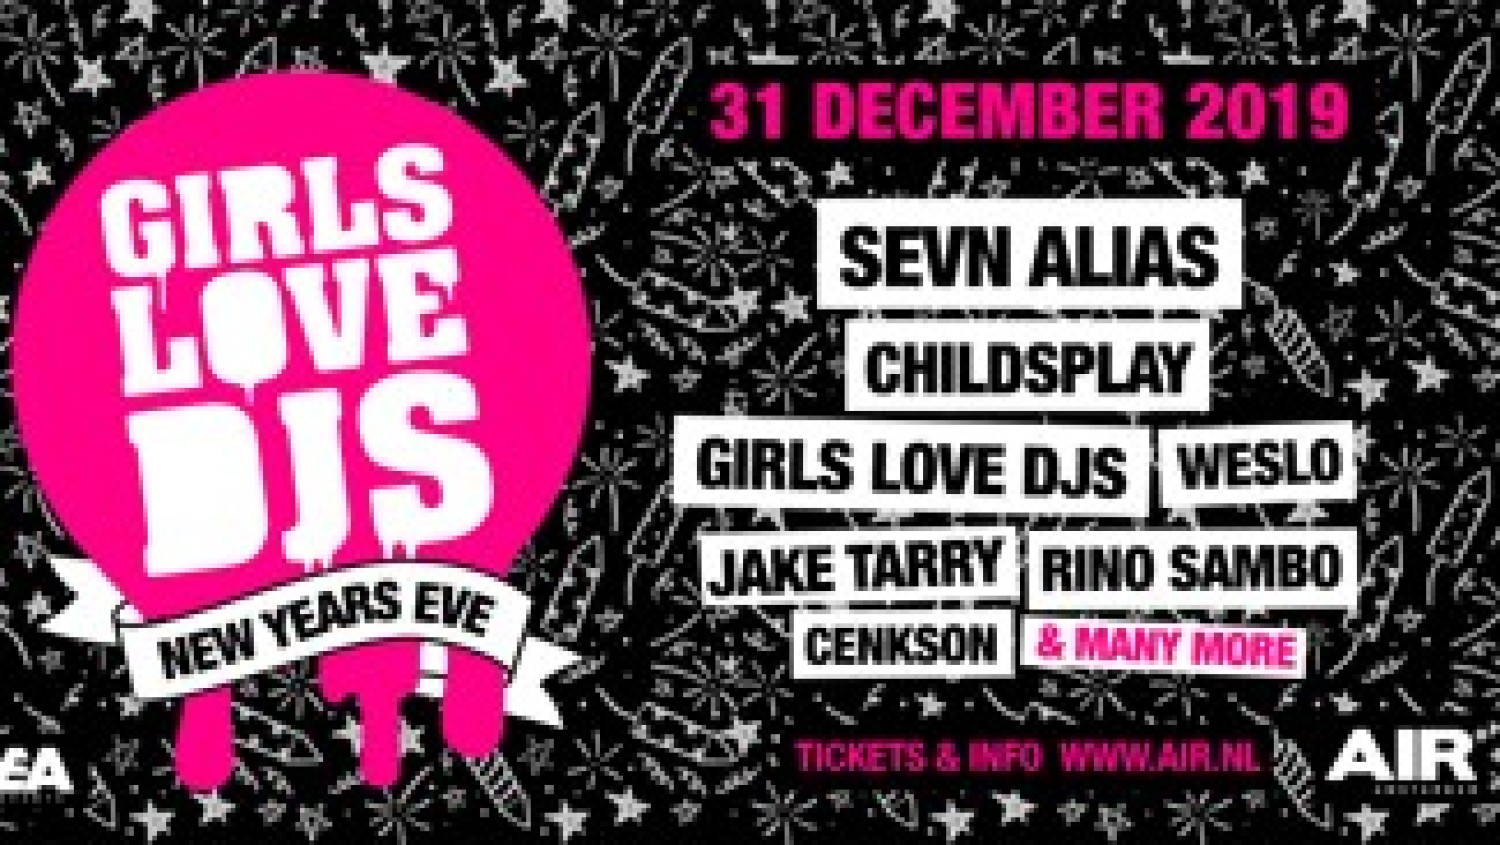 Party nieuws: Laatste tickets voor Girls Love DJs NYE nu in de verkoop!